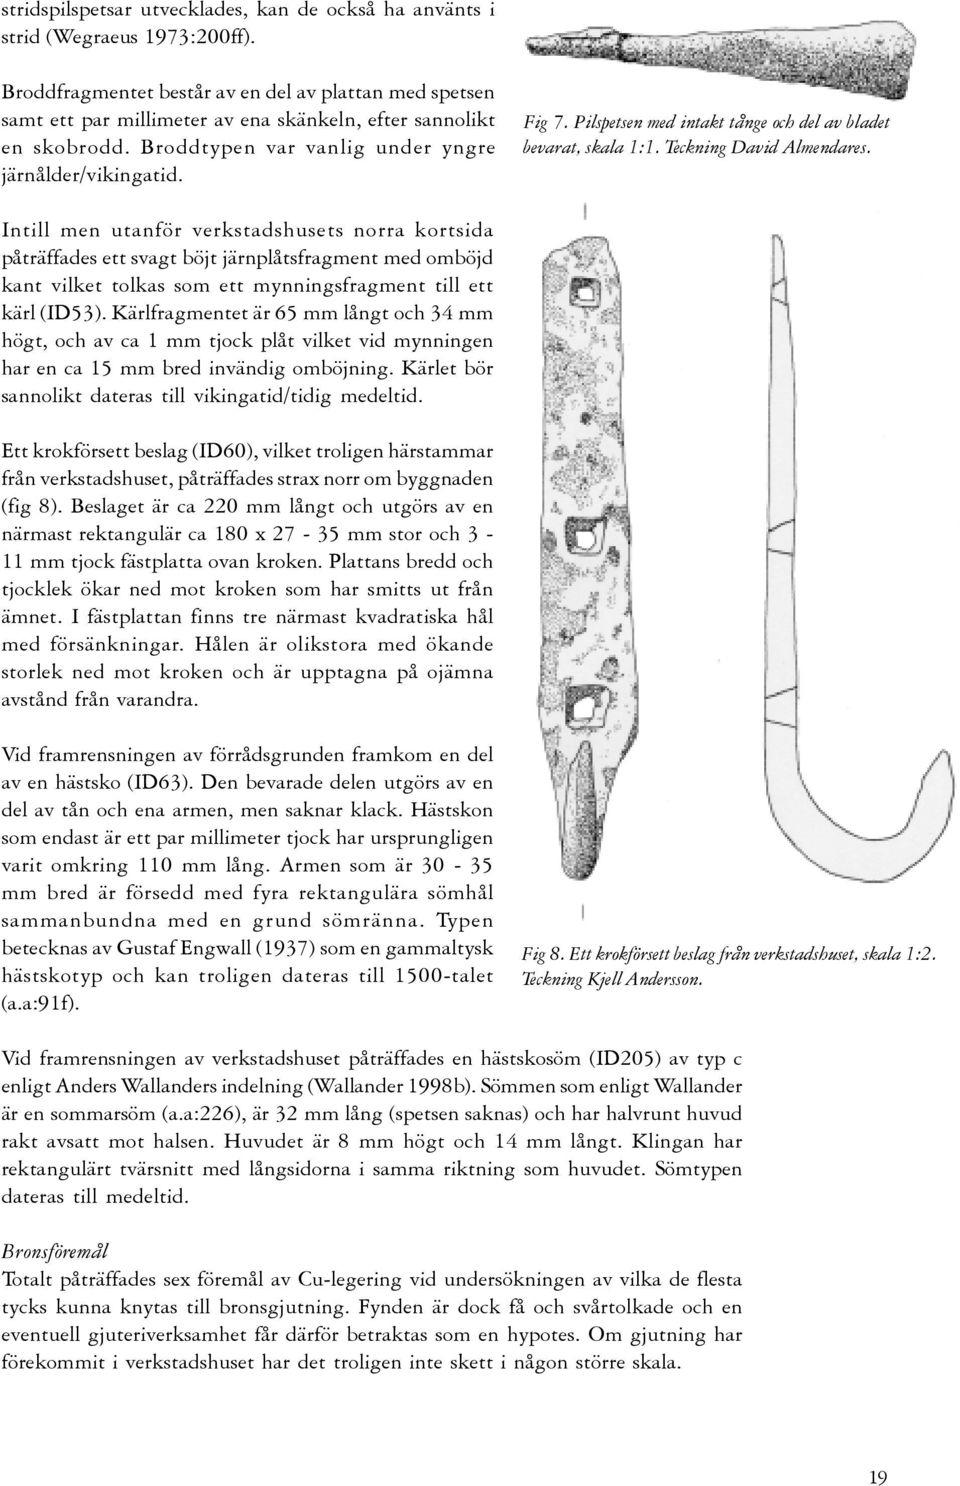 Pilspetsen med intakt tånge och del av bladet bevarat, skala 1:1. Teckning David Almendares.